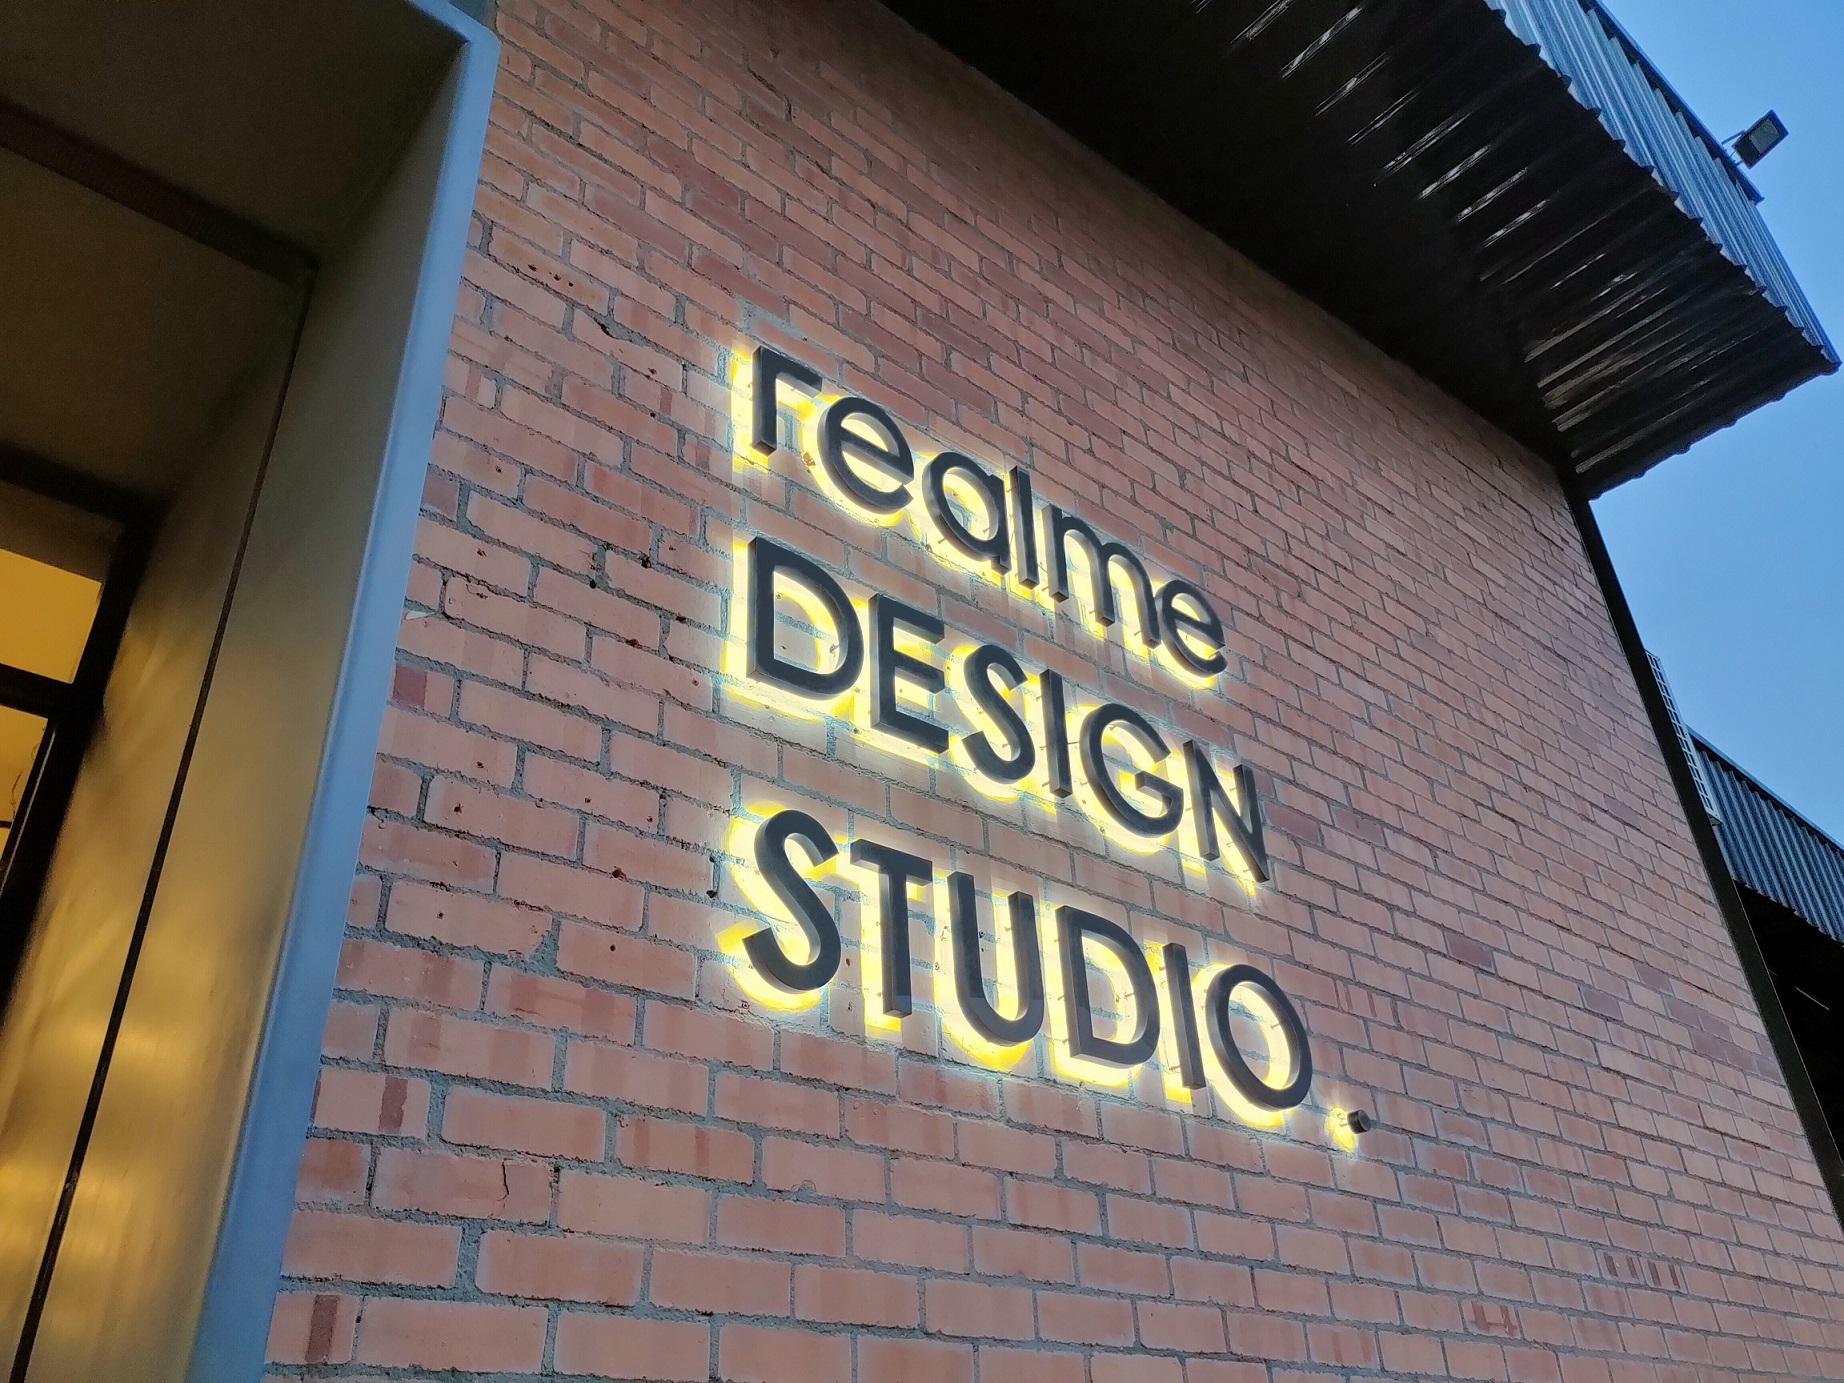 realme Design Studio 2